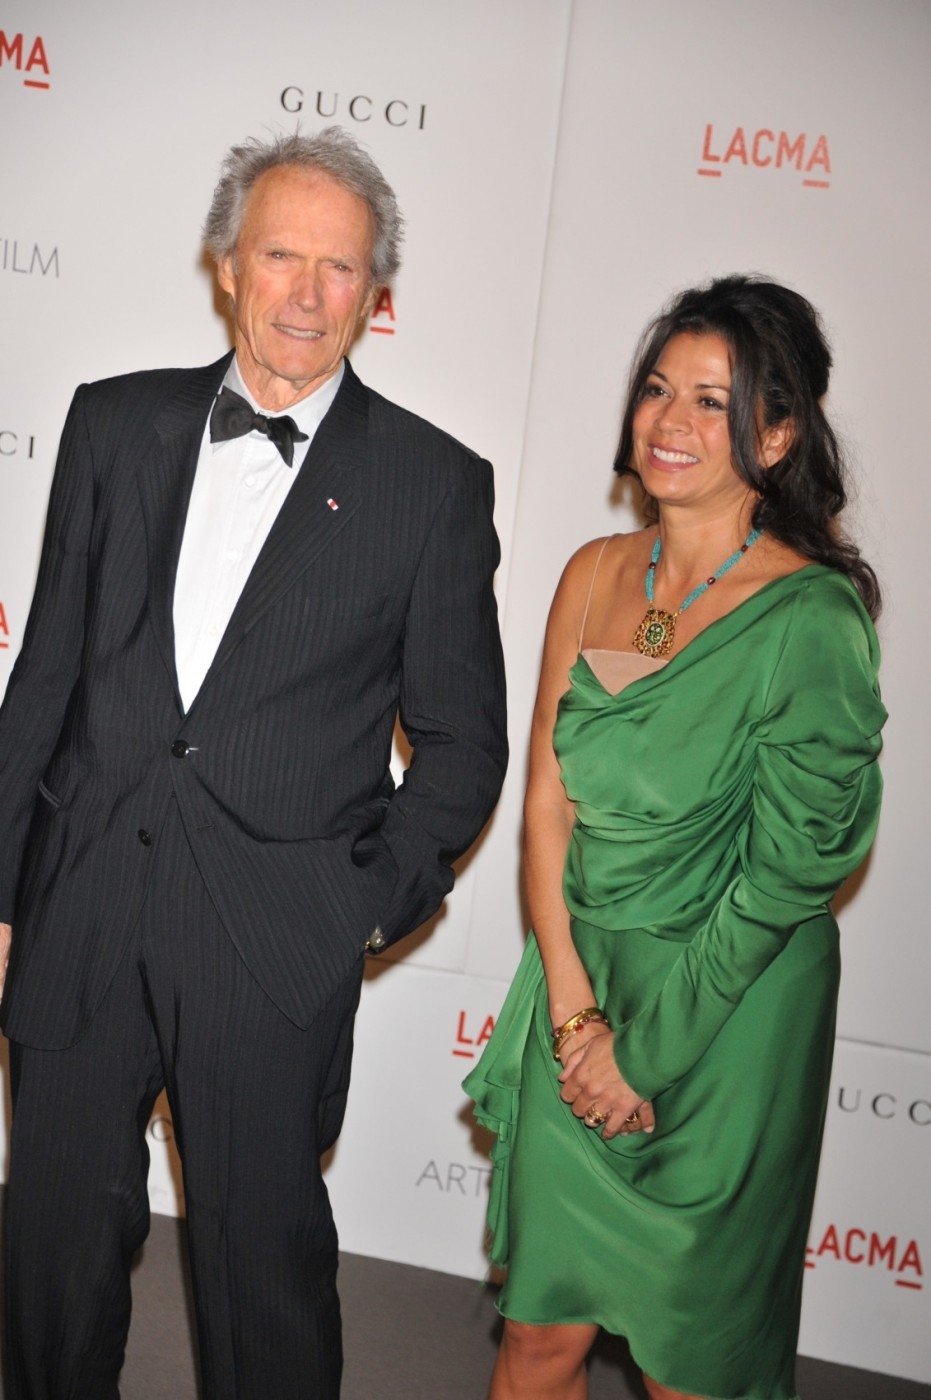 Clint Eastwood se svou součanou manželkou Dinou. Jeho rodinu nyní budou moci sledovat diváci v nové reality show